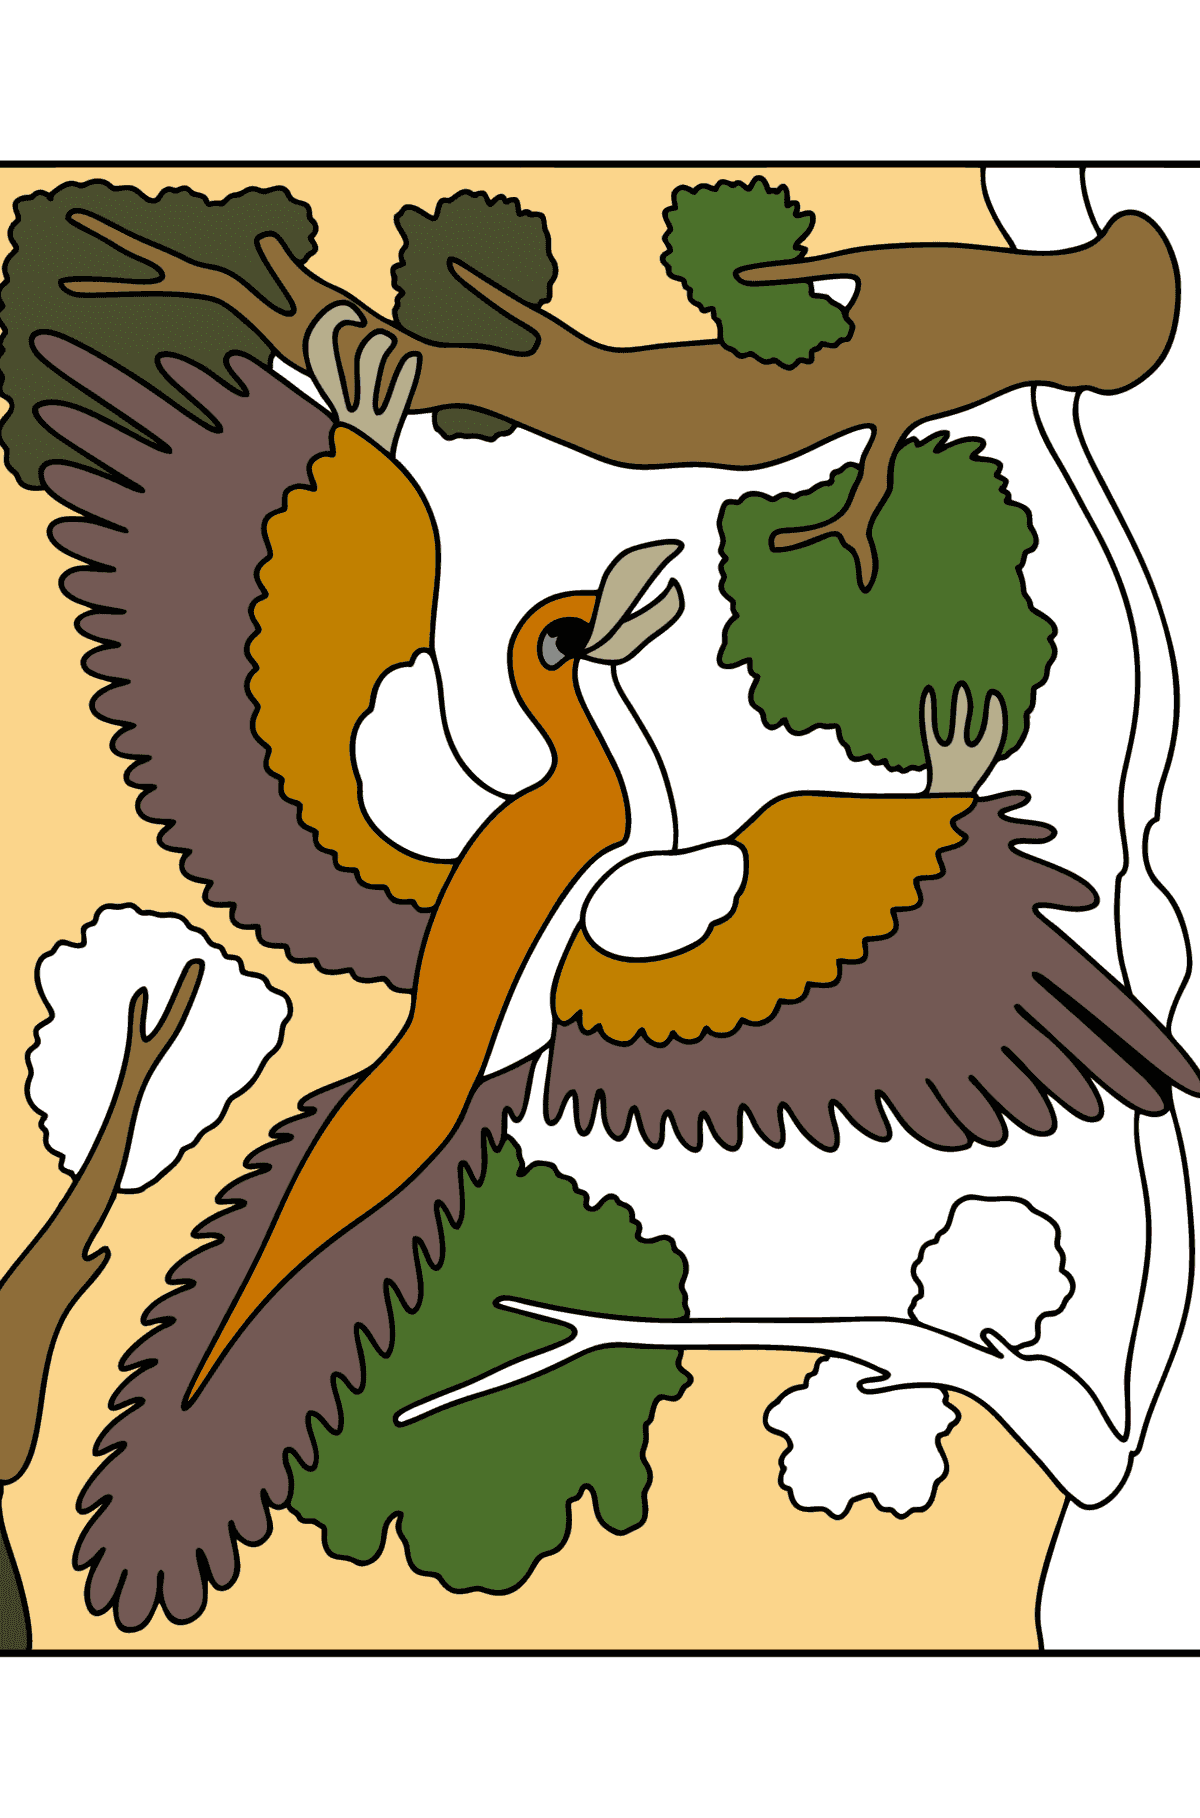 Coloriage Archaeopteryx - Coloriages pour les Enfants